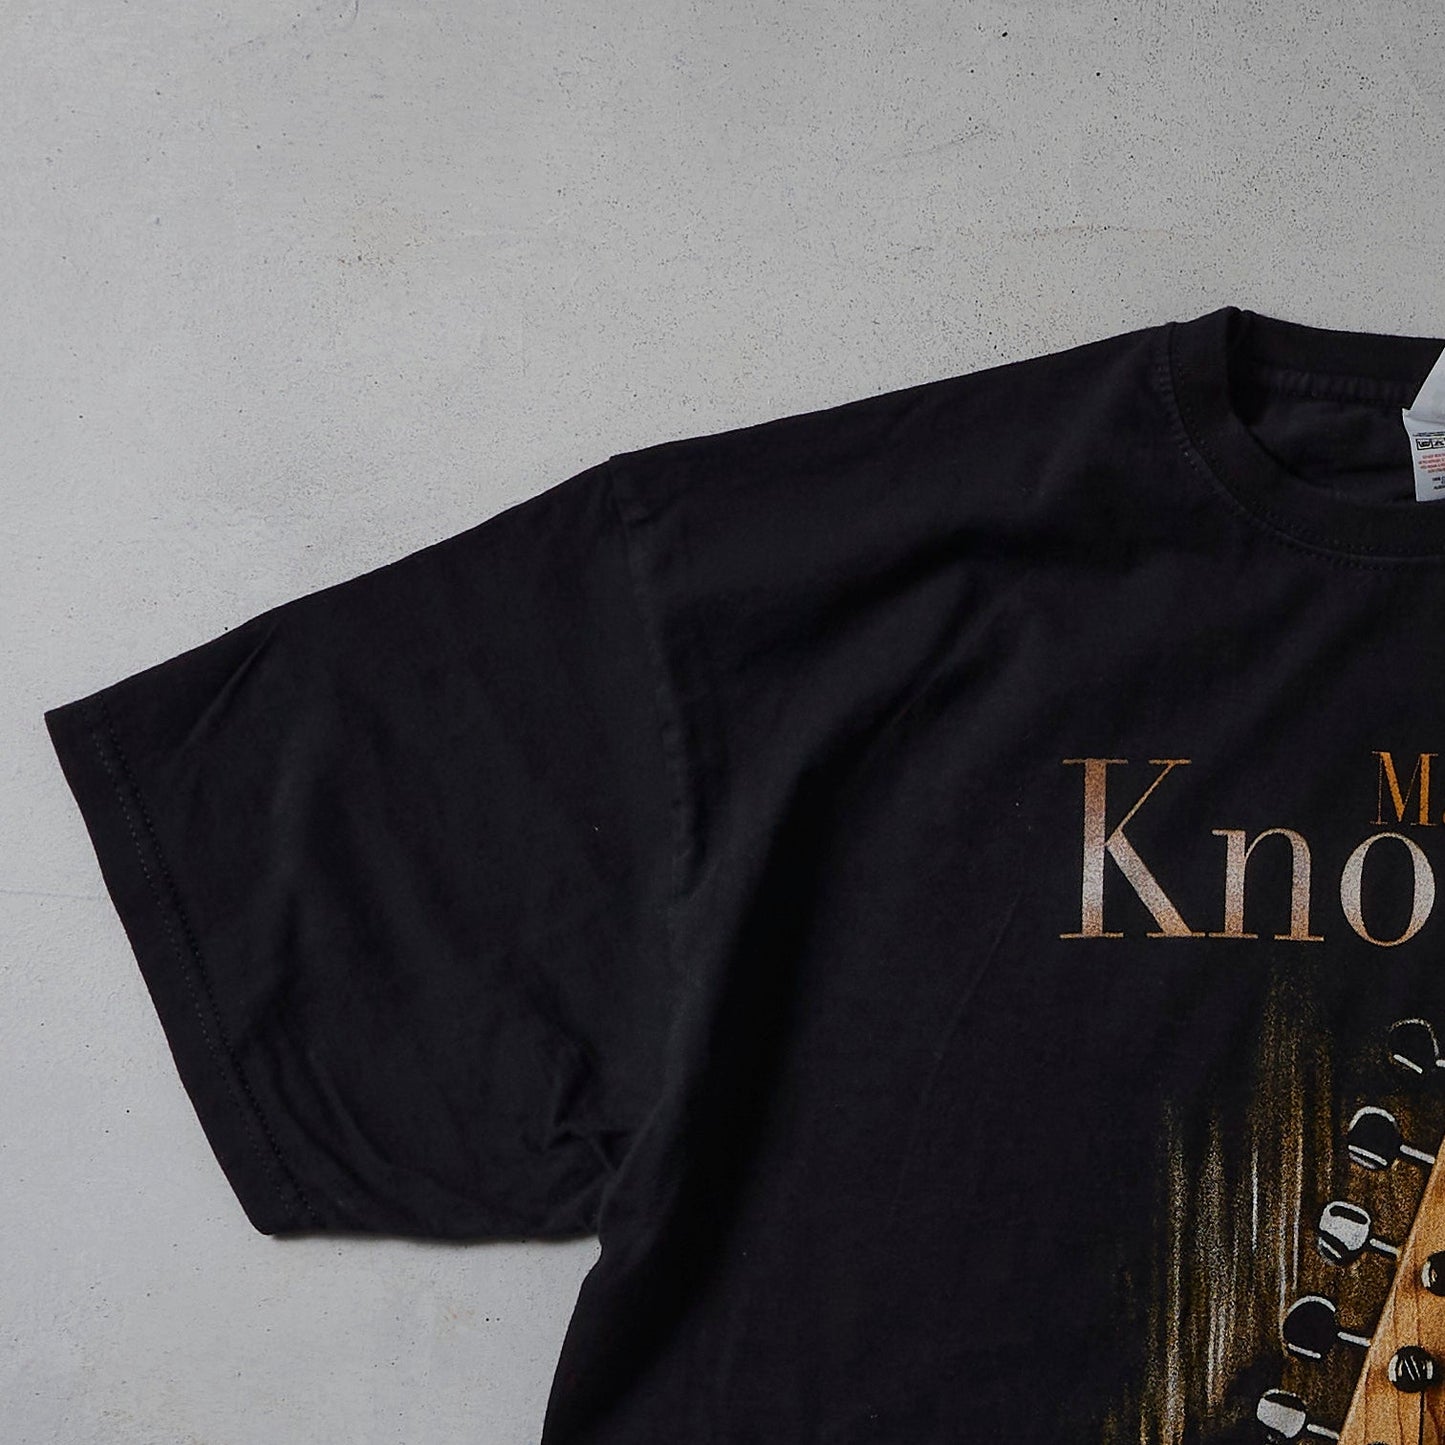 Vintage Mark Knopfler T-shirt